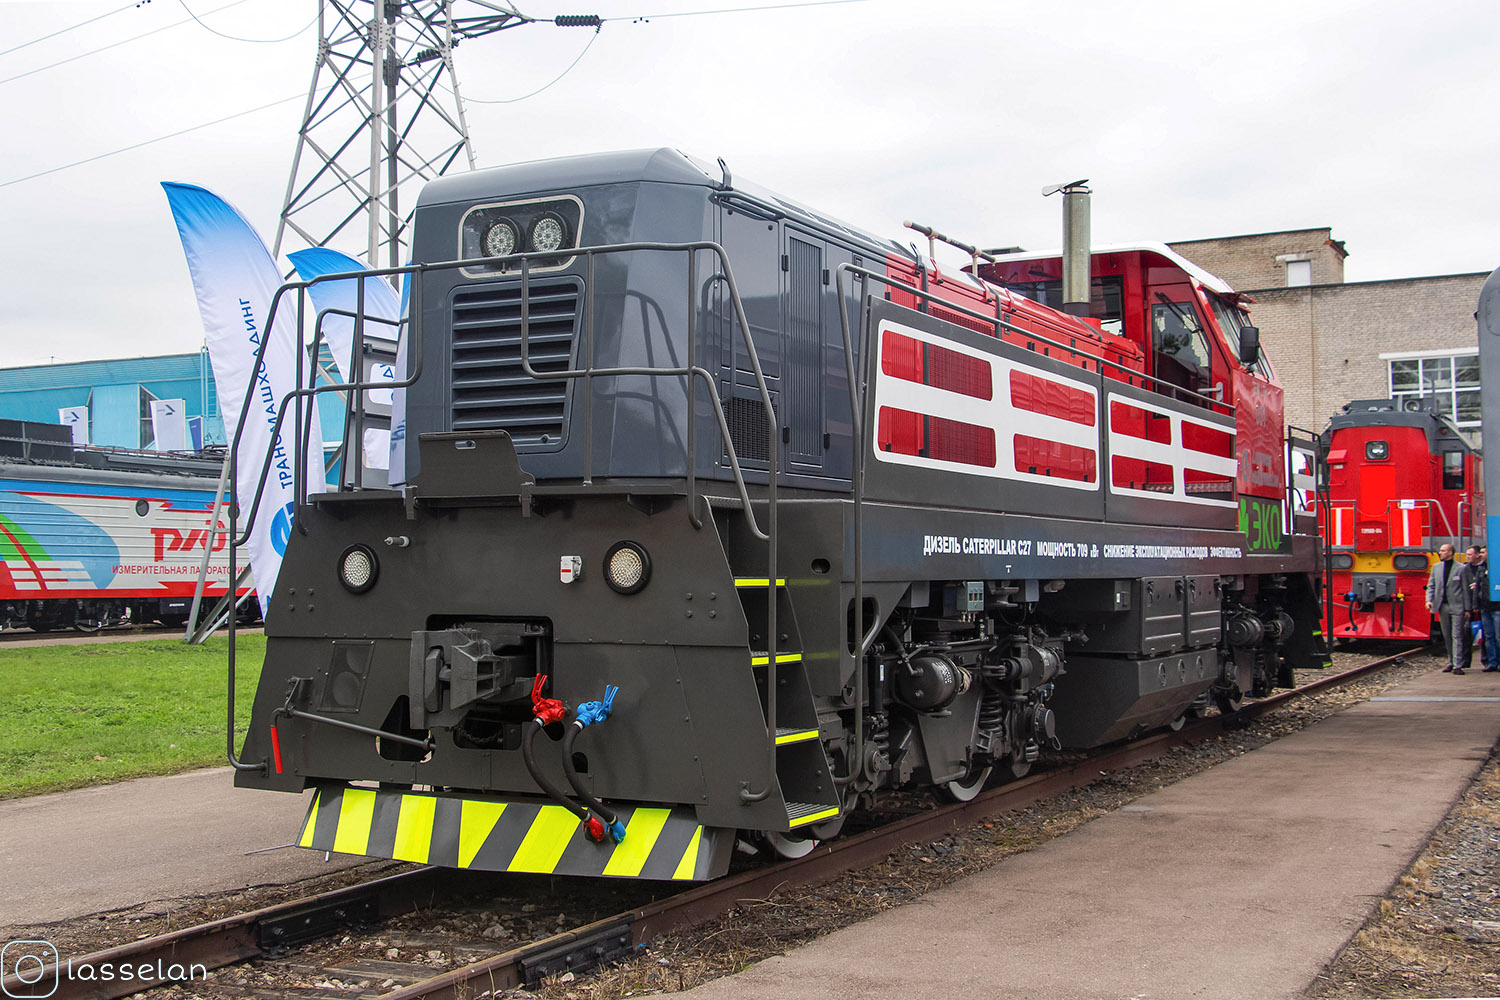 TEM-LTH-001; Moskovska željeznica — The 4th International Rail Salon EXPO 1520